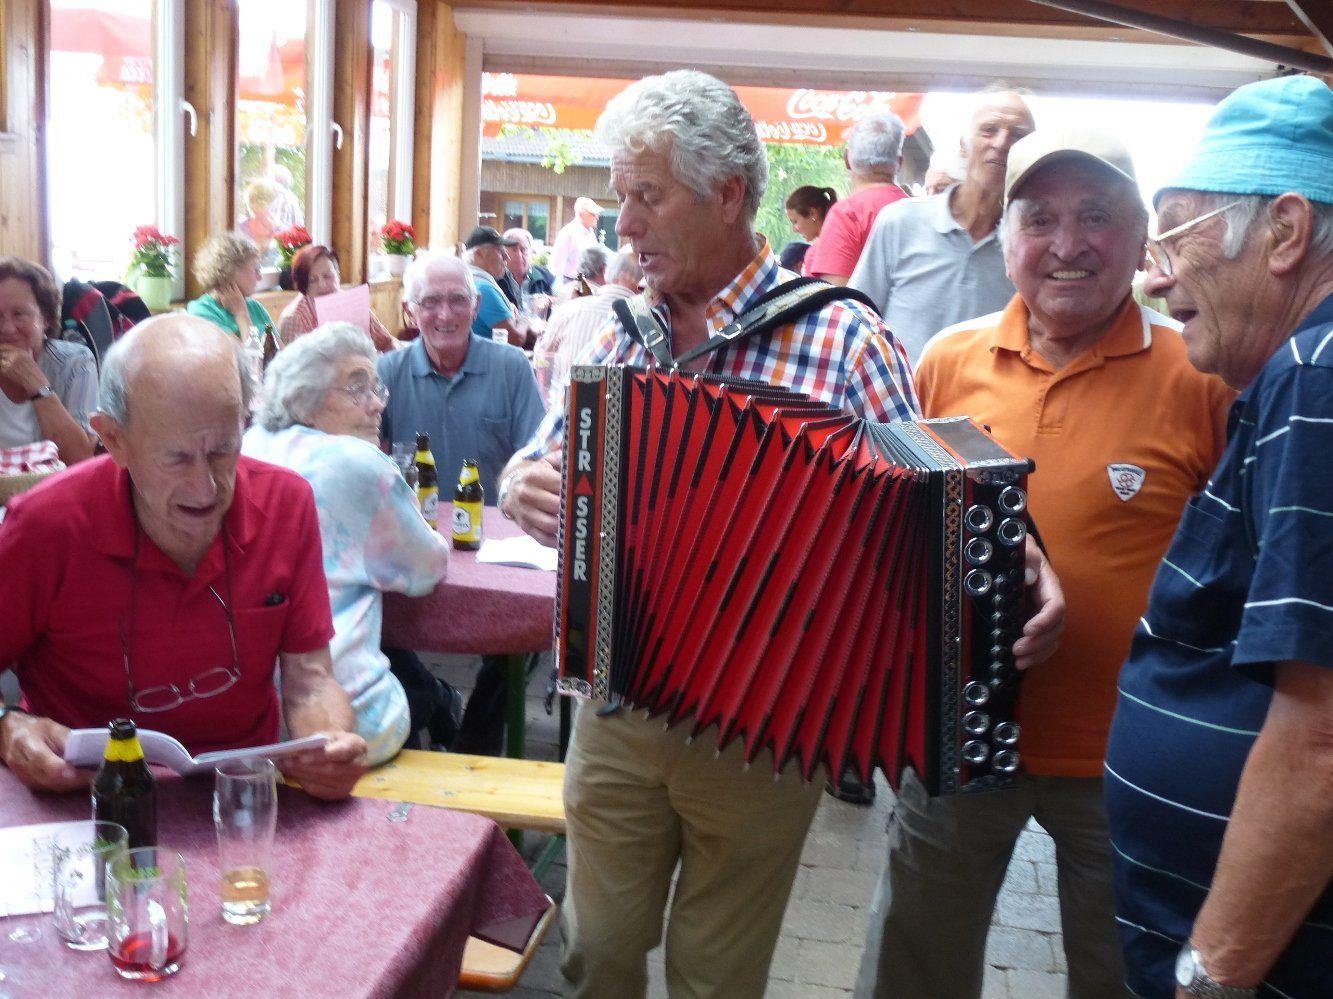 Stimmungsvoller Grillnachmittag der Lochauer Senioren auf dem Fesslerhof in Eichenberg/Schüssellehen.